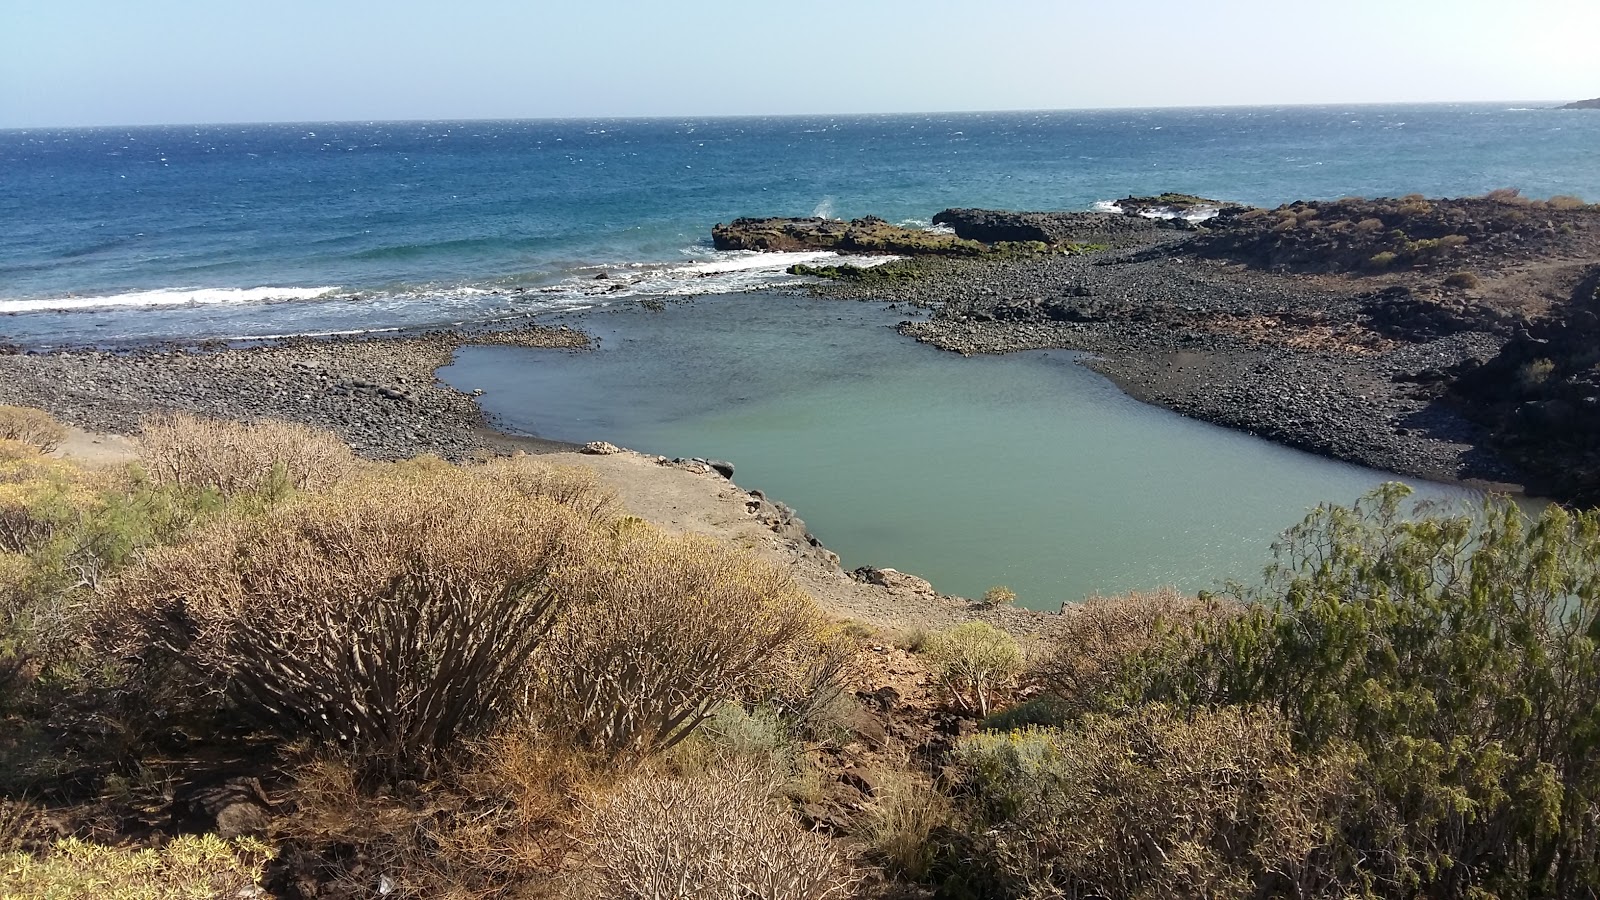 Playa El Barranco'in fotoğrafı çok temiz temizlik seviyesi ile